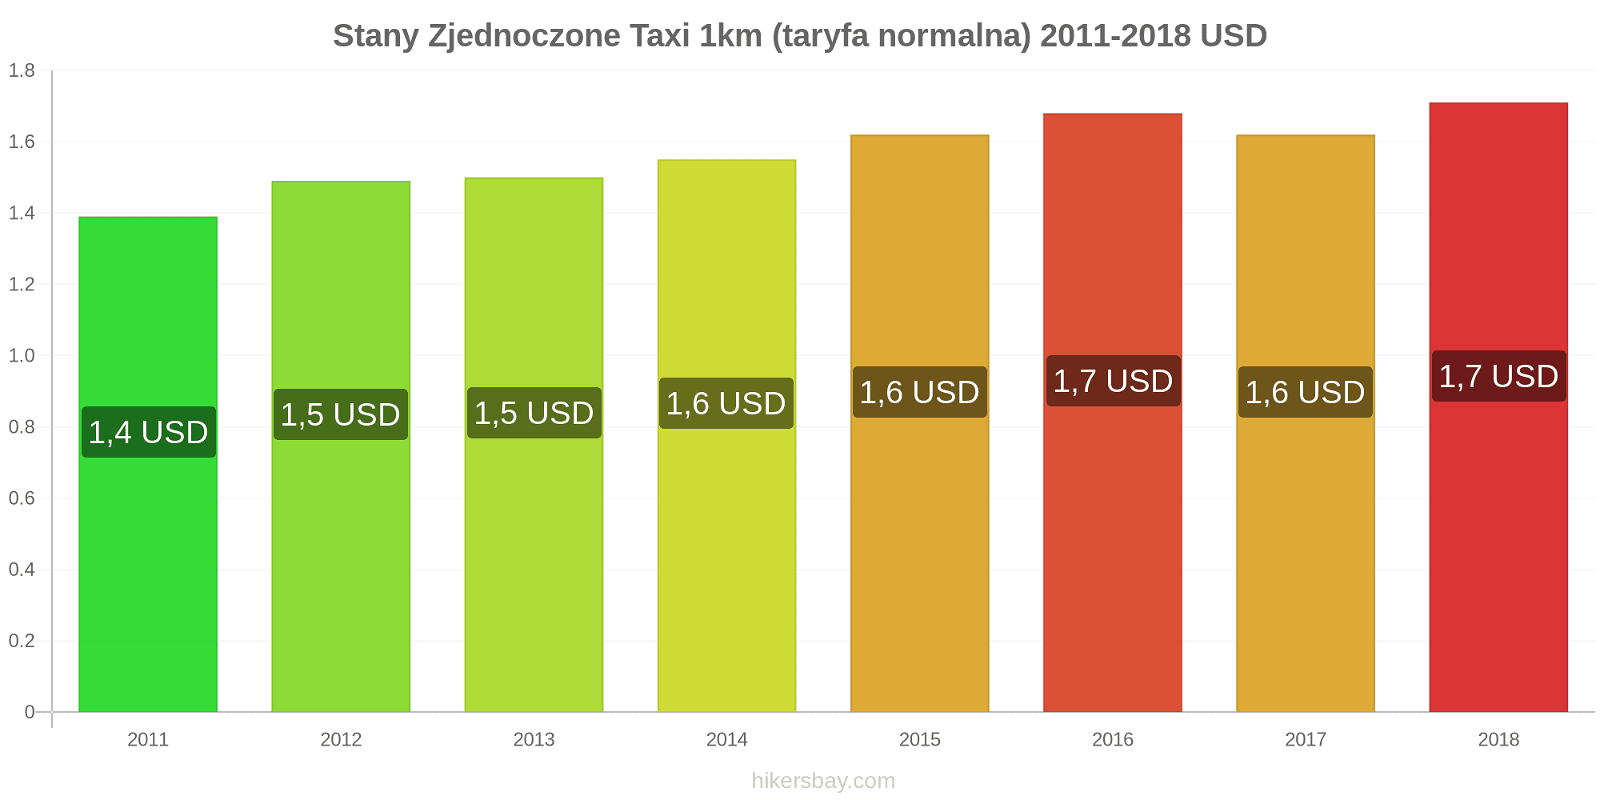 Stany Zjednoczone zmiany cen Taxi 1km (taryfa normalna) hikersbay.com